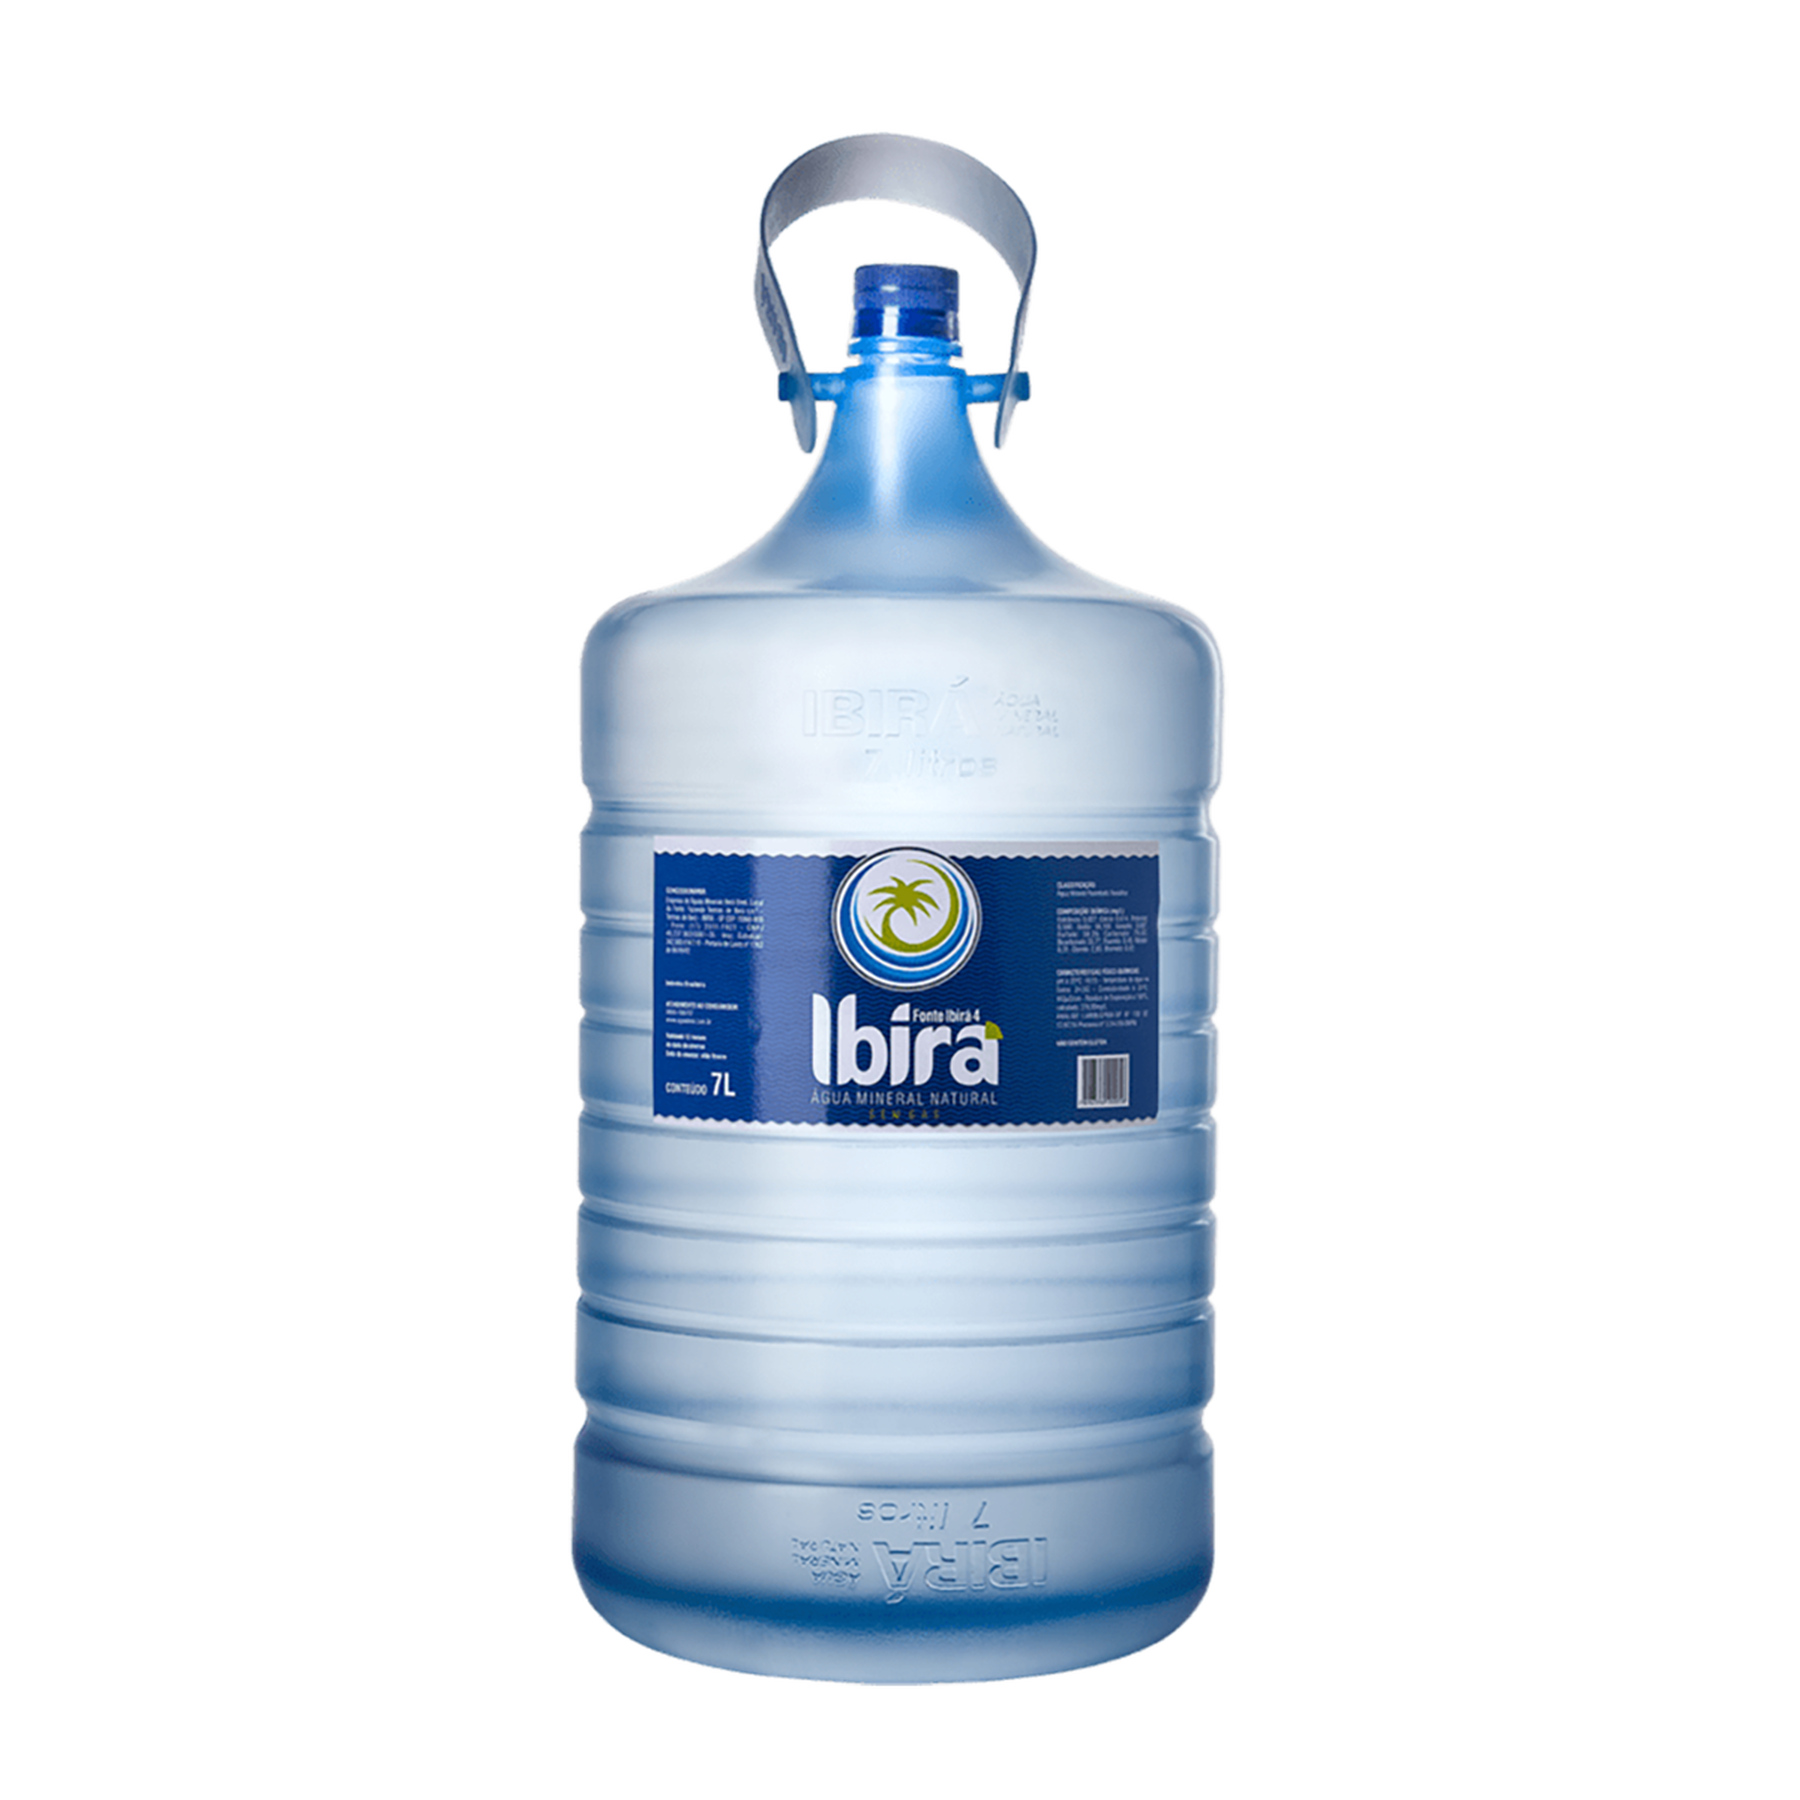 Água Ibira Galão 7l